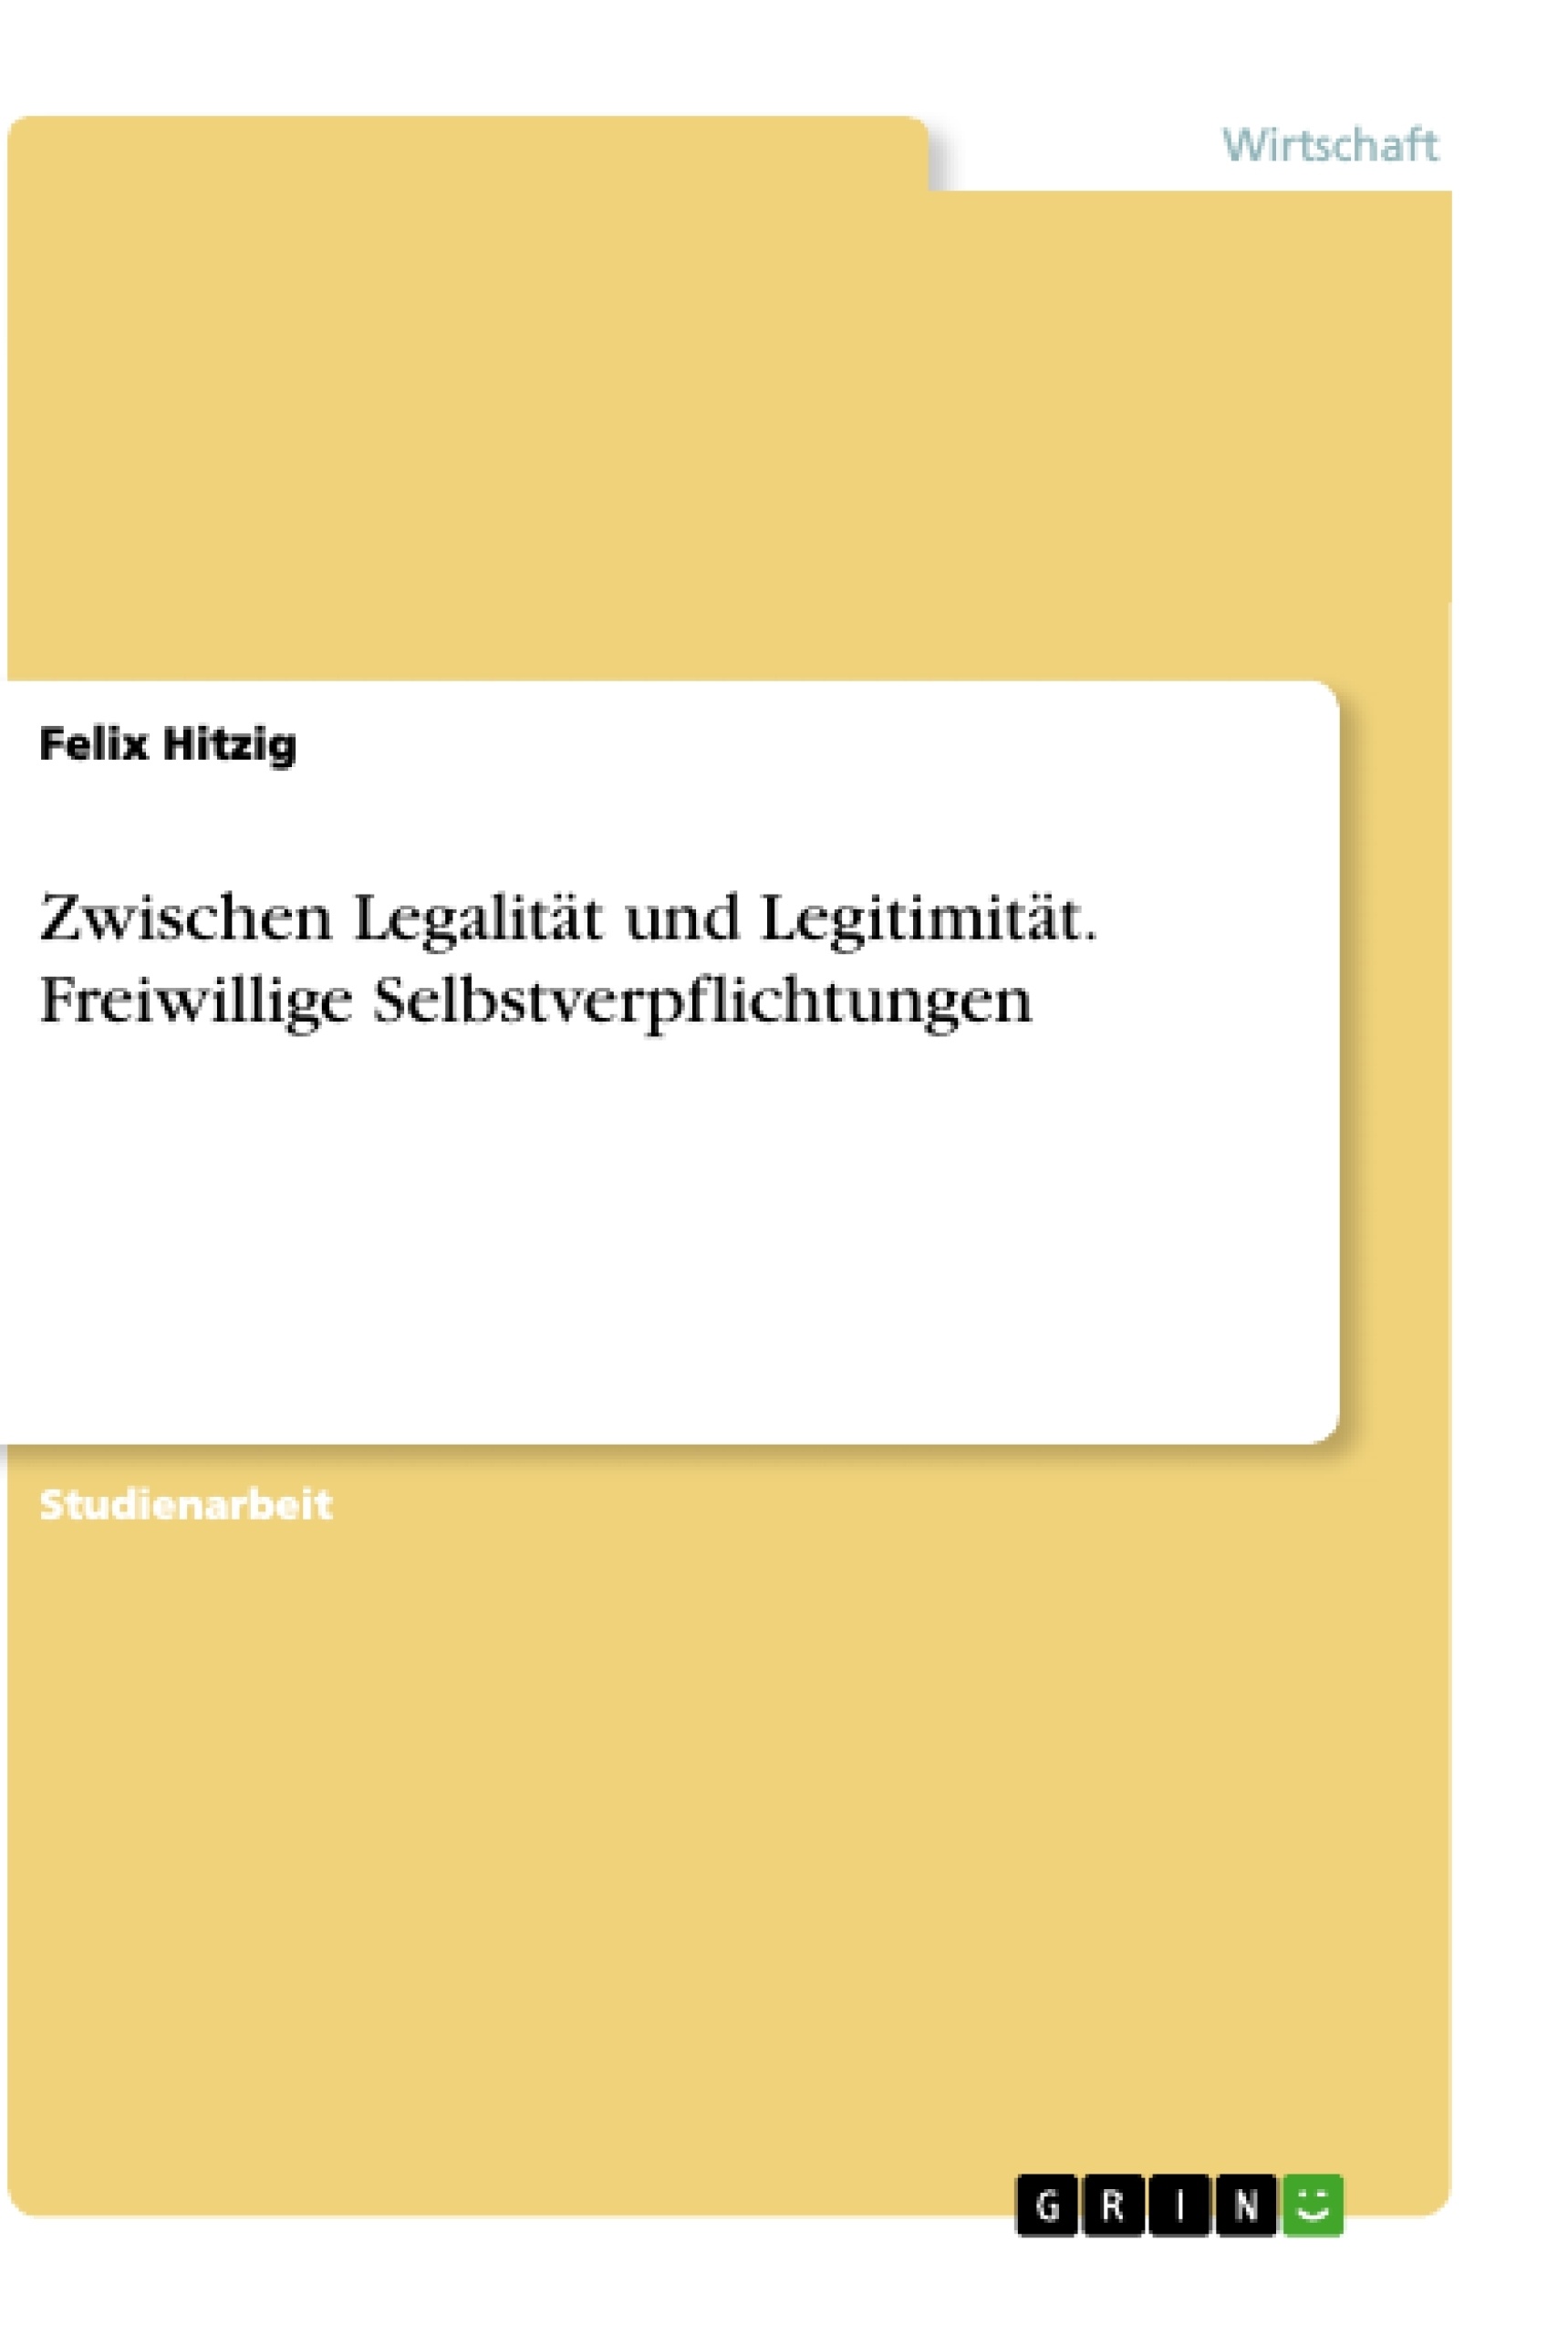 Titel: Zwischen Legalität und Legitimität. Freiwillige Selbstverpflichtungen